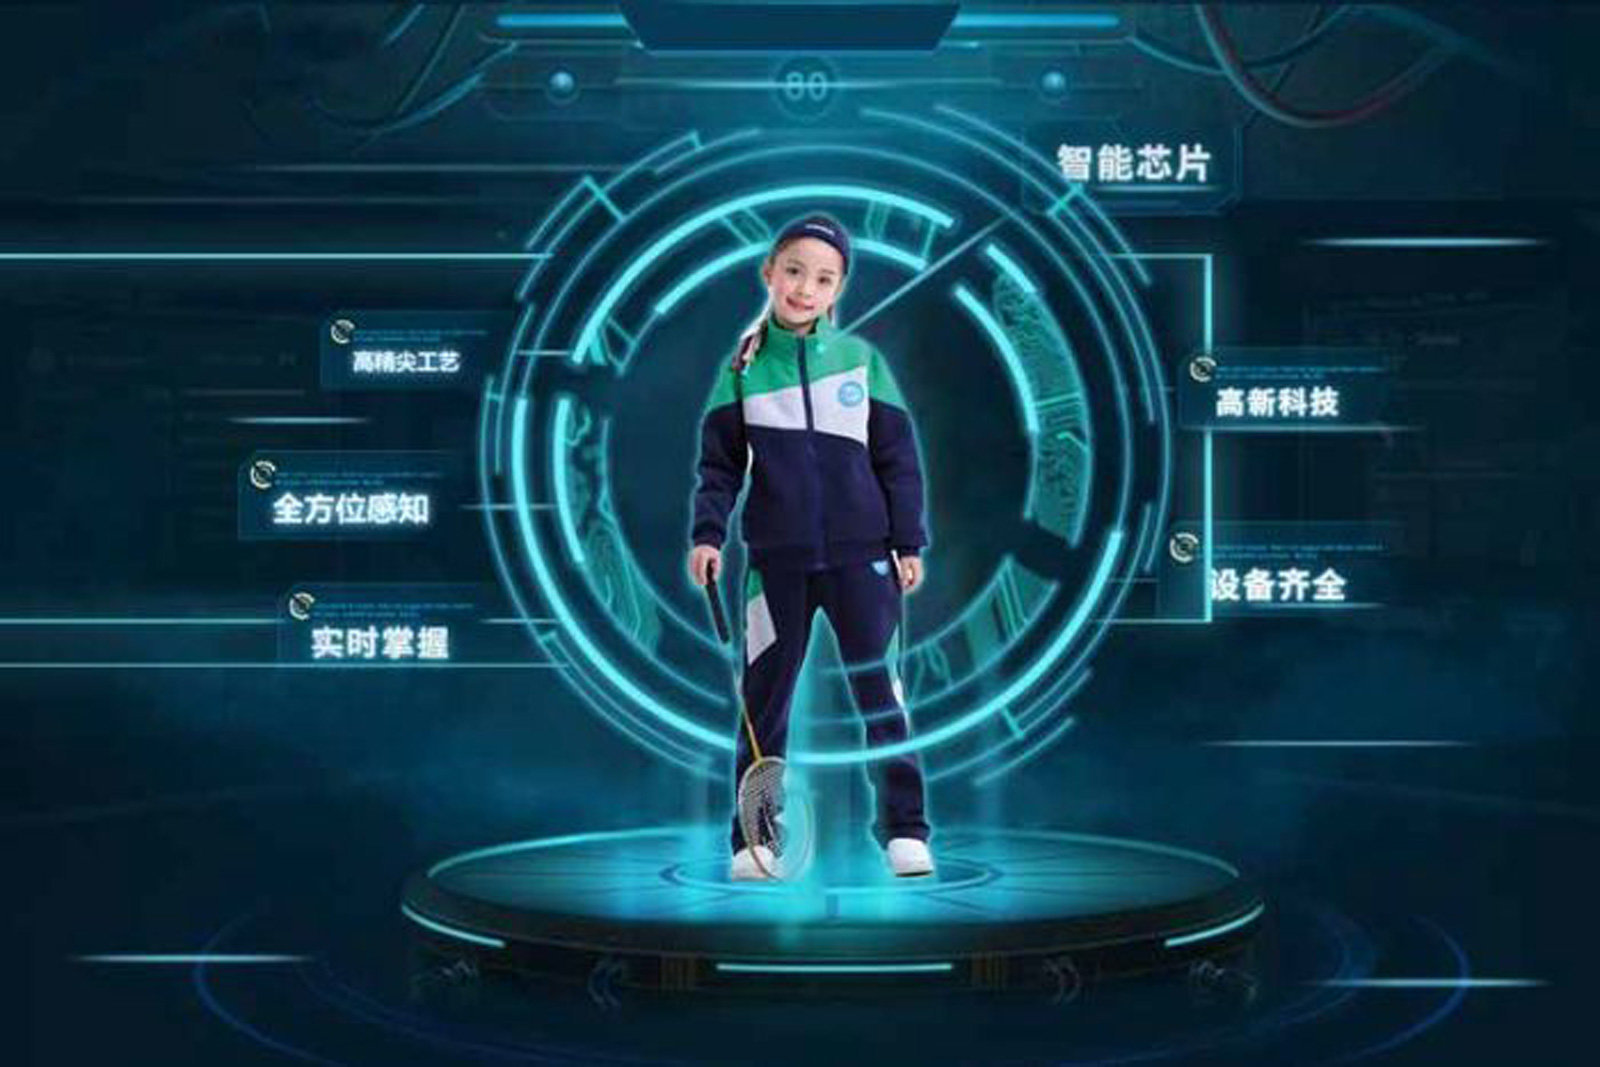 พี่จีนเอาจริงทดลอง ‘ชุดยูนิฟอร์มอัจฉริยะ’ มอนิเตอร์ทุกย่างก้าวกันเด็กโดดเรียน